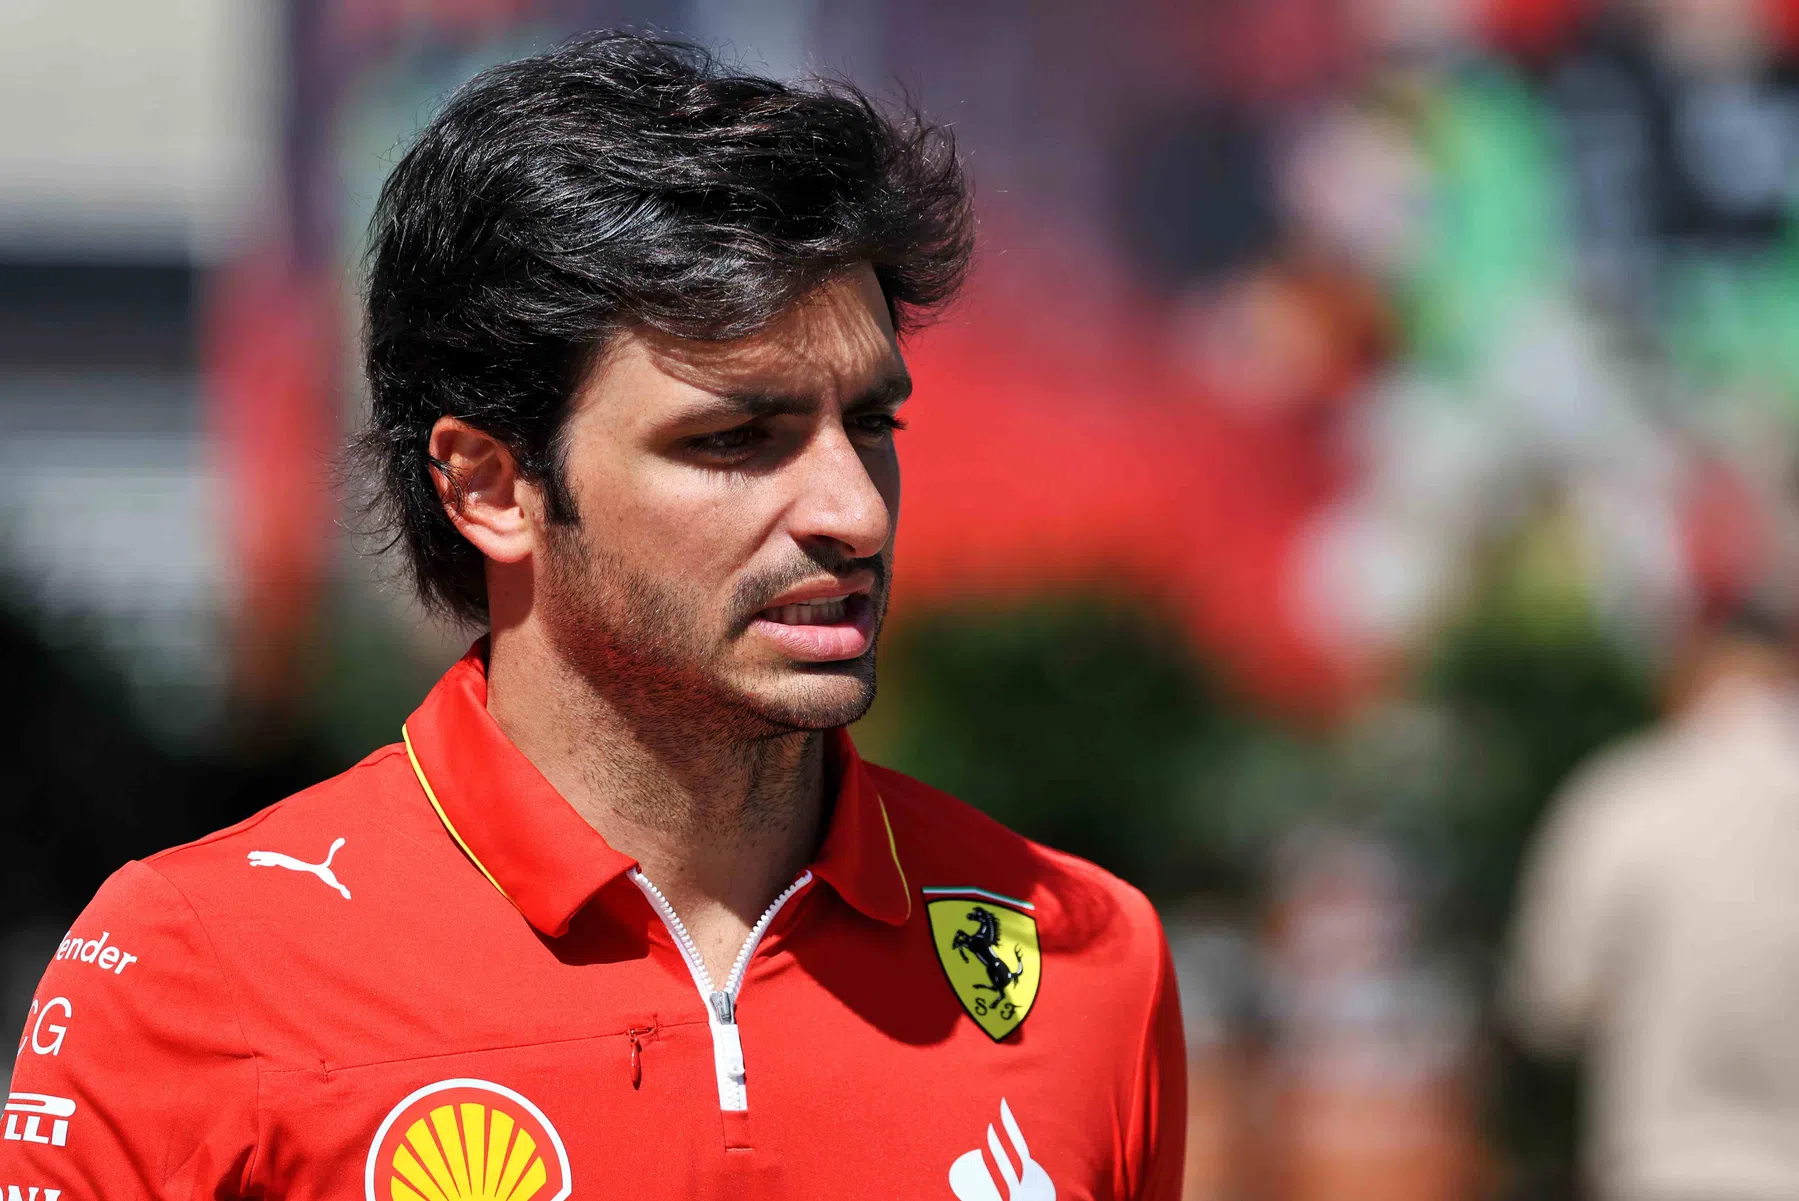 Os planos de Sainz não foram alterados pela extensão do contrato de Alonso